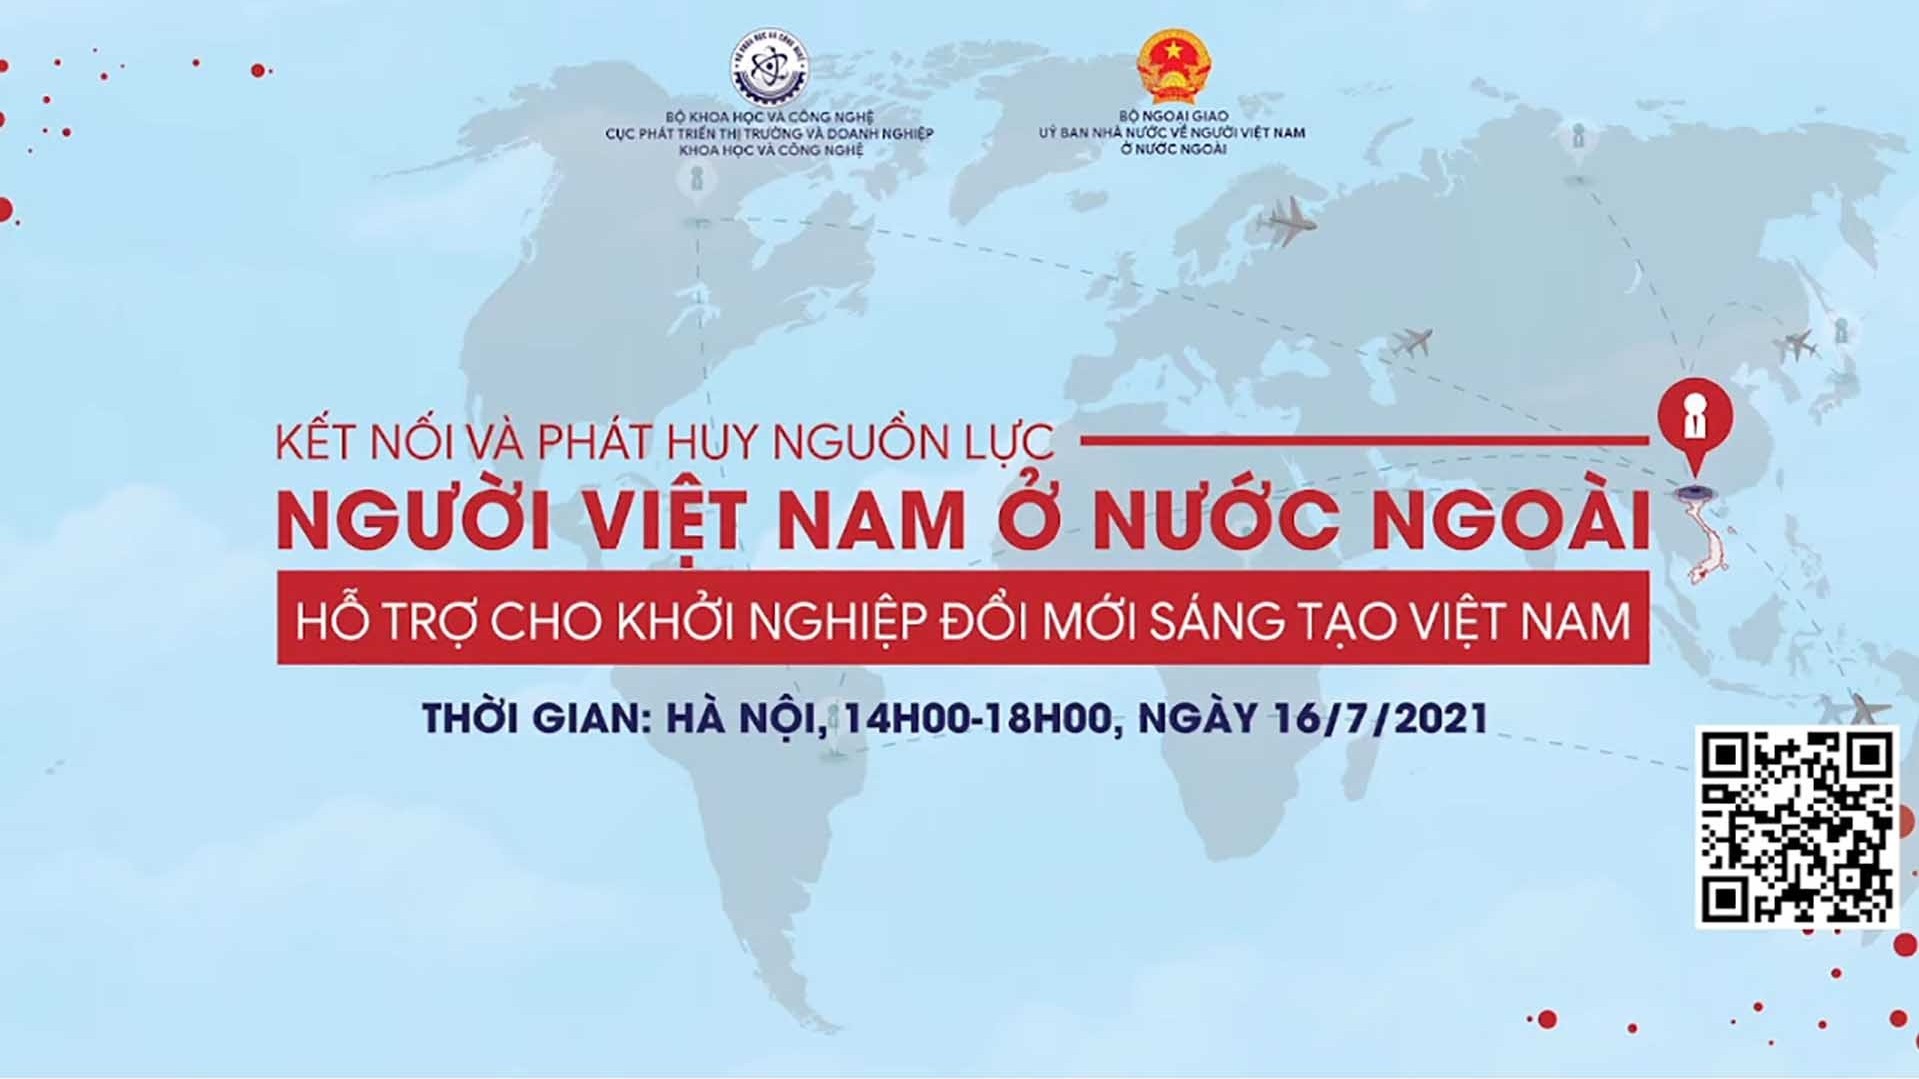 Hội thảo kết nối và phát huy nguồn lực người Việt Nam ở nước ngoài hỗ trợ cho khởi nghiệp Đổi mới sáng tạo Việt Nam